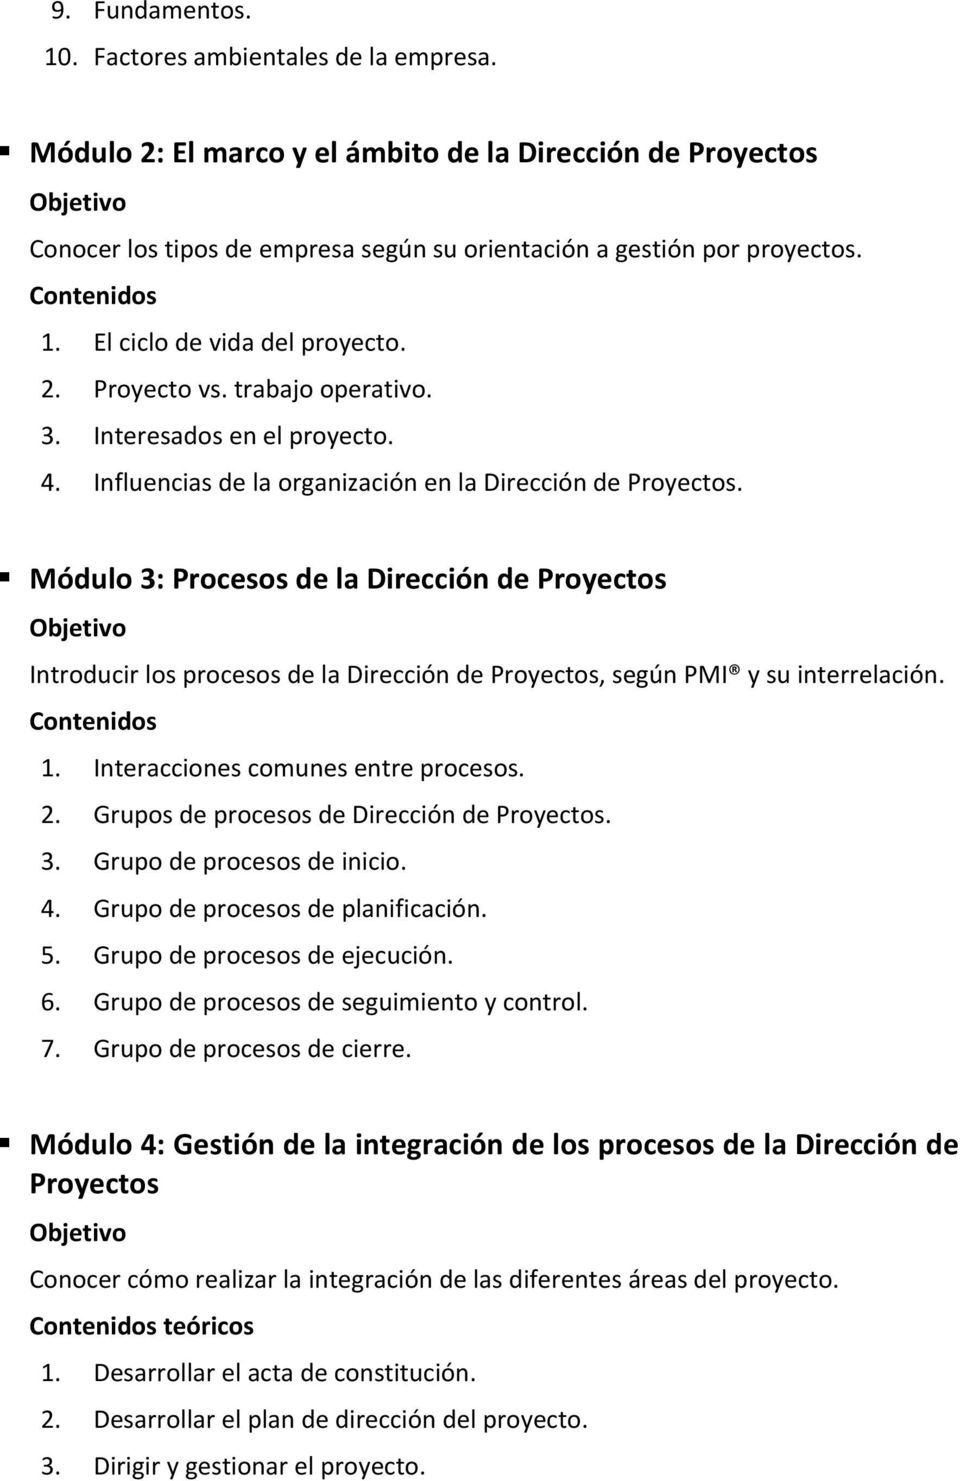 Módulo 3: Procesos de la Dirección de Proyectos Introducir los procesos de la Dirección de Proyectos, según PMI y su interrelación. 1. Interacciones comunes entre procesos. 2.